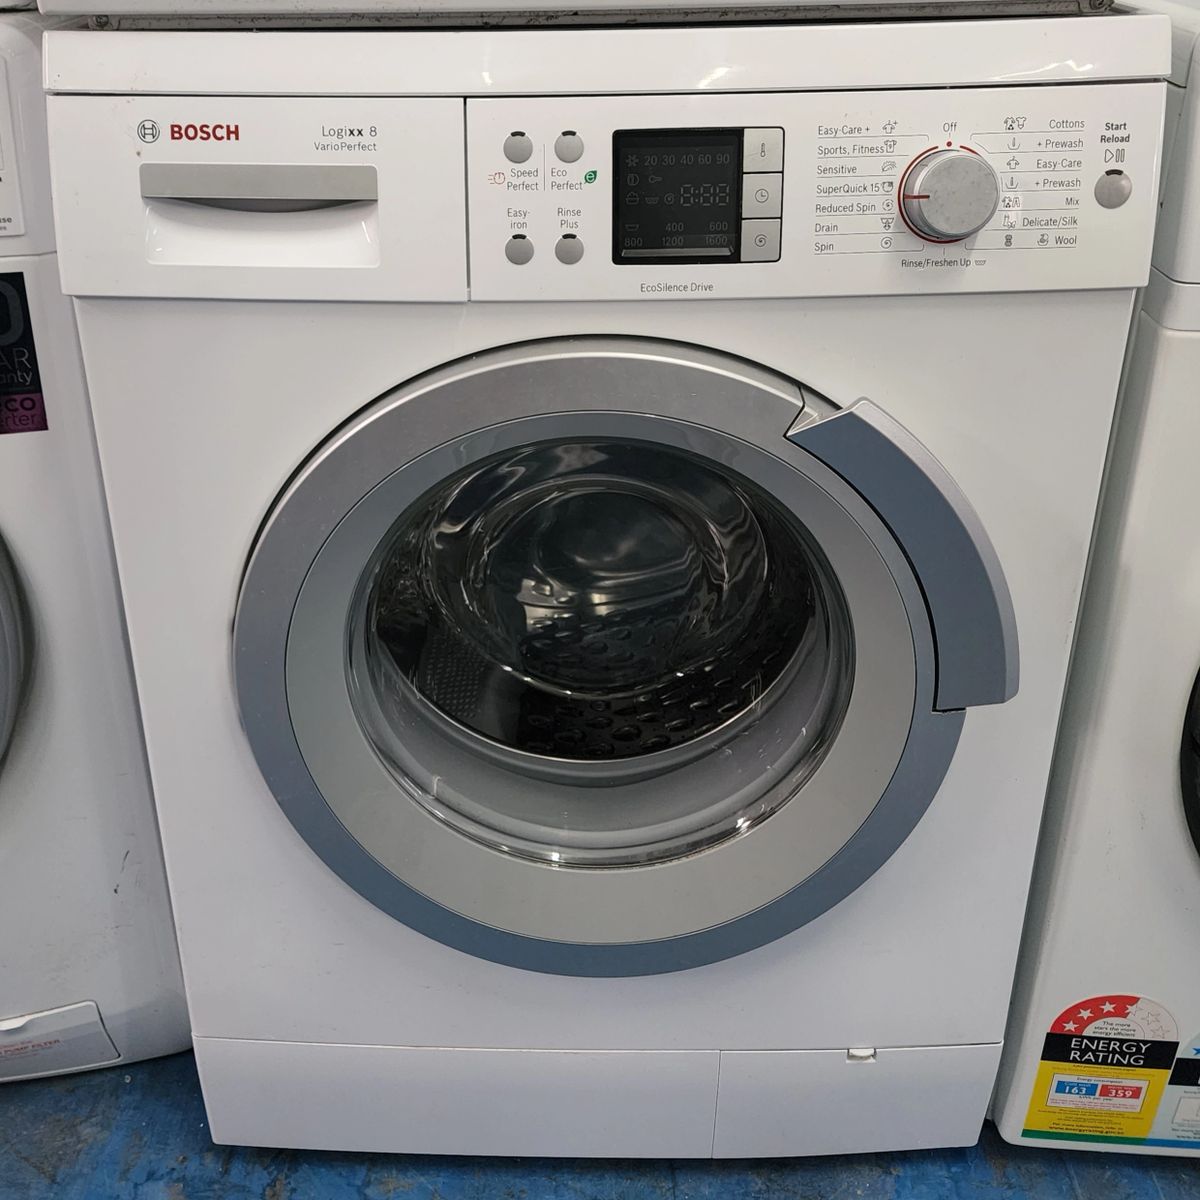 Bosch Front Loader Washing Machine. Logixx 8. 8kg